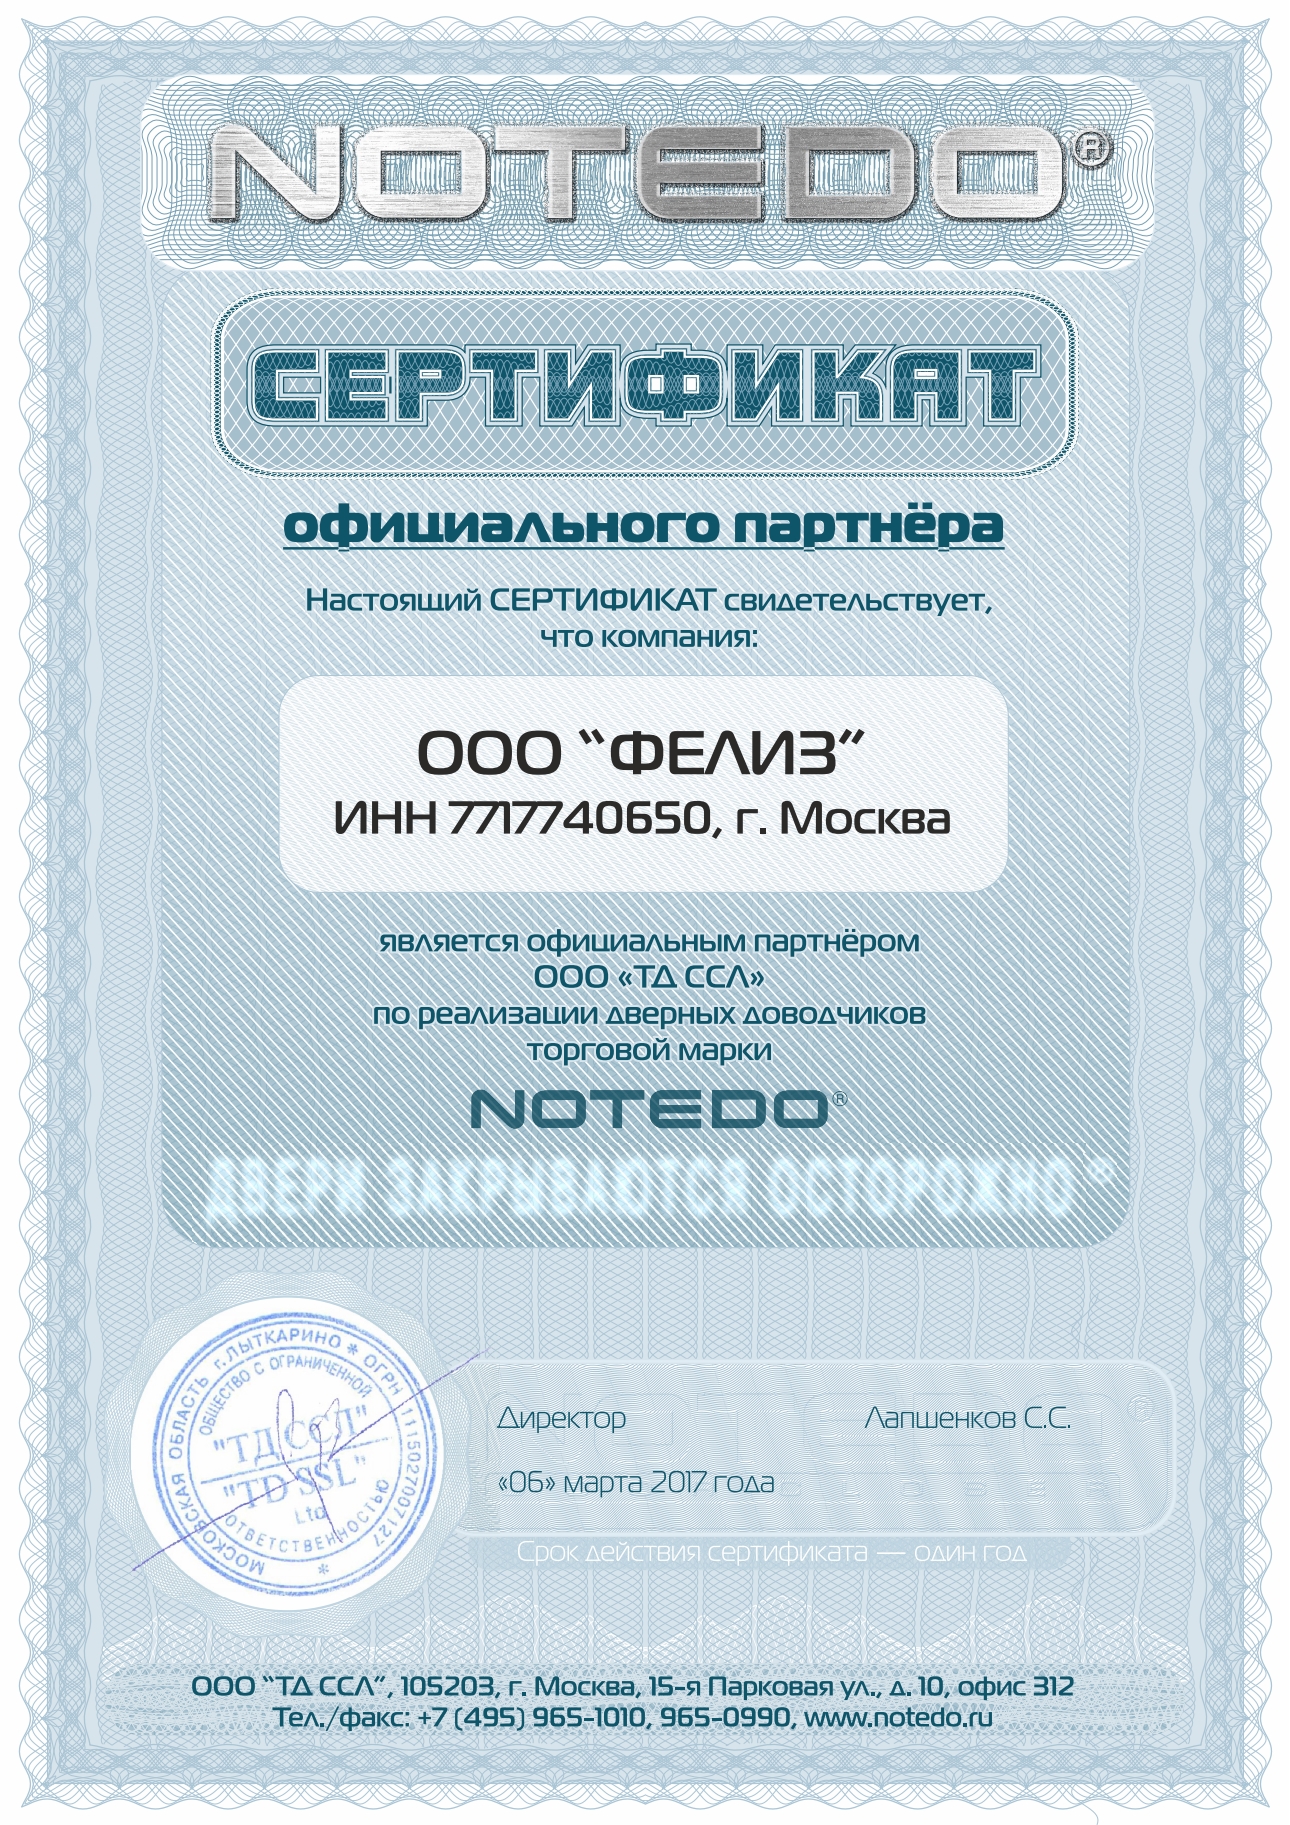 Сертификат официального партнера NOTEDO